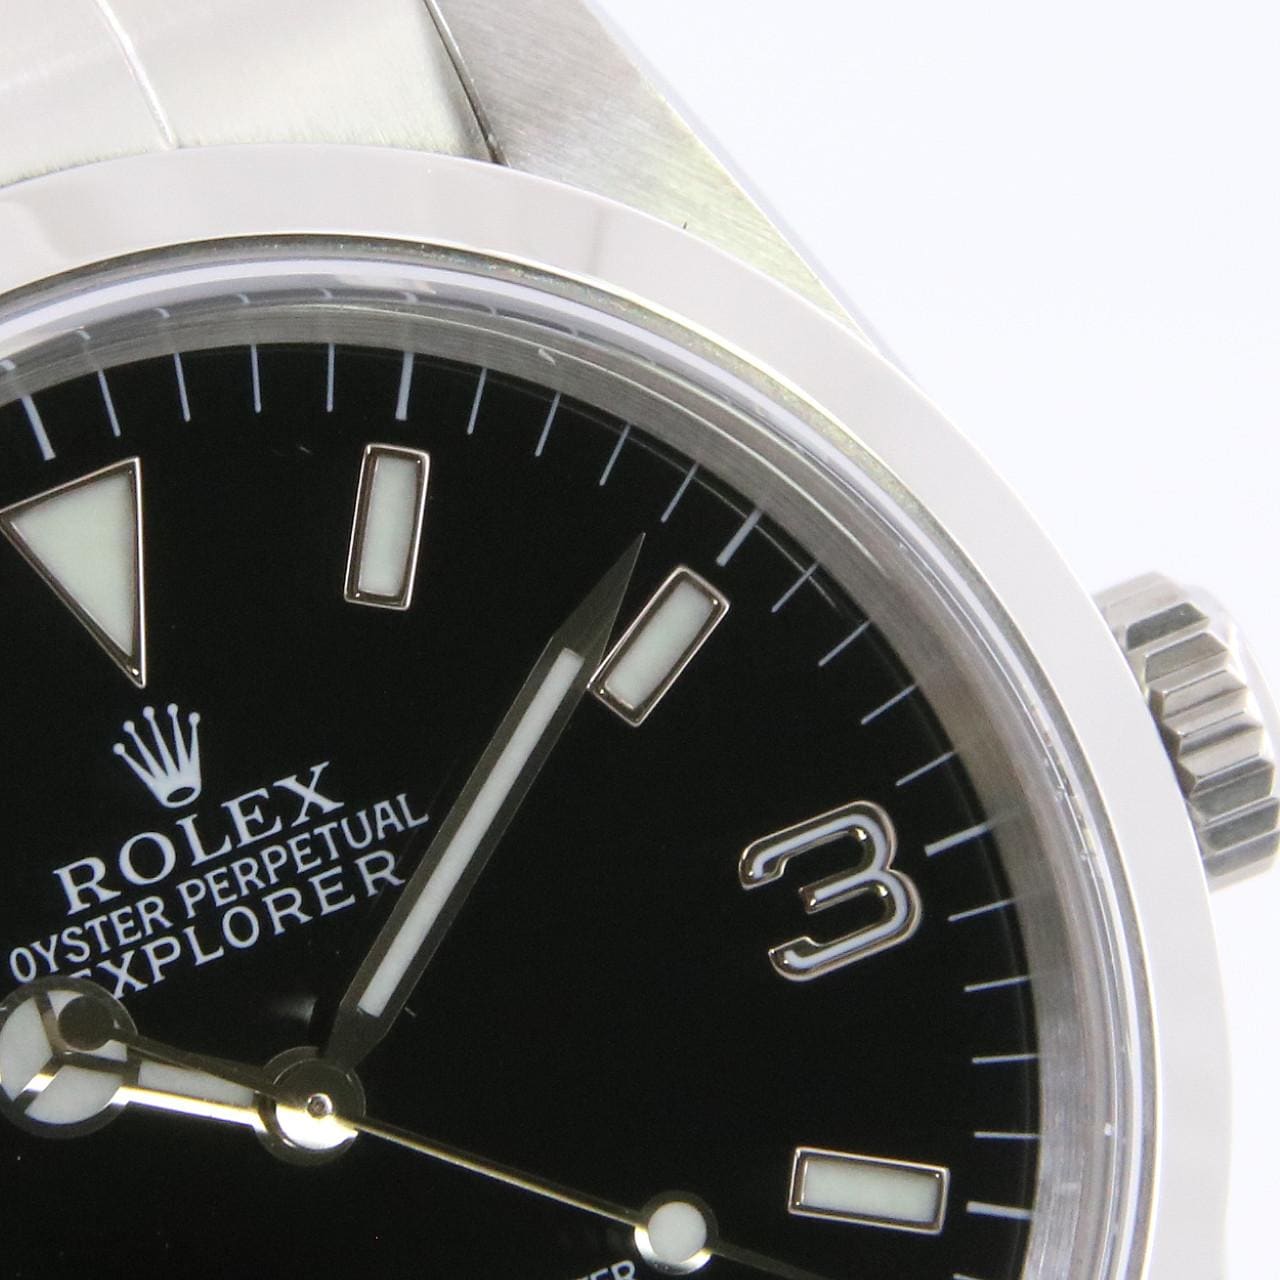 ロレックス ROLEX 14270 A番(1999年頃製造) ブラック メンズ 腕時計